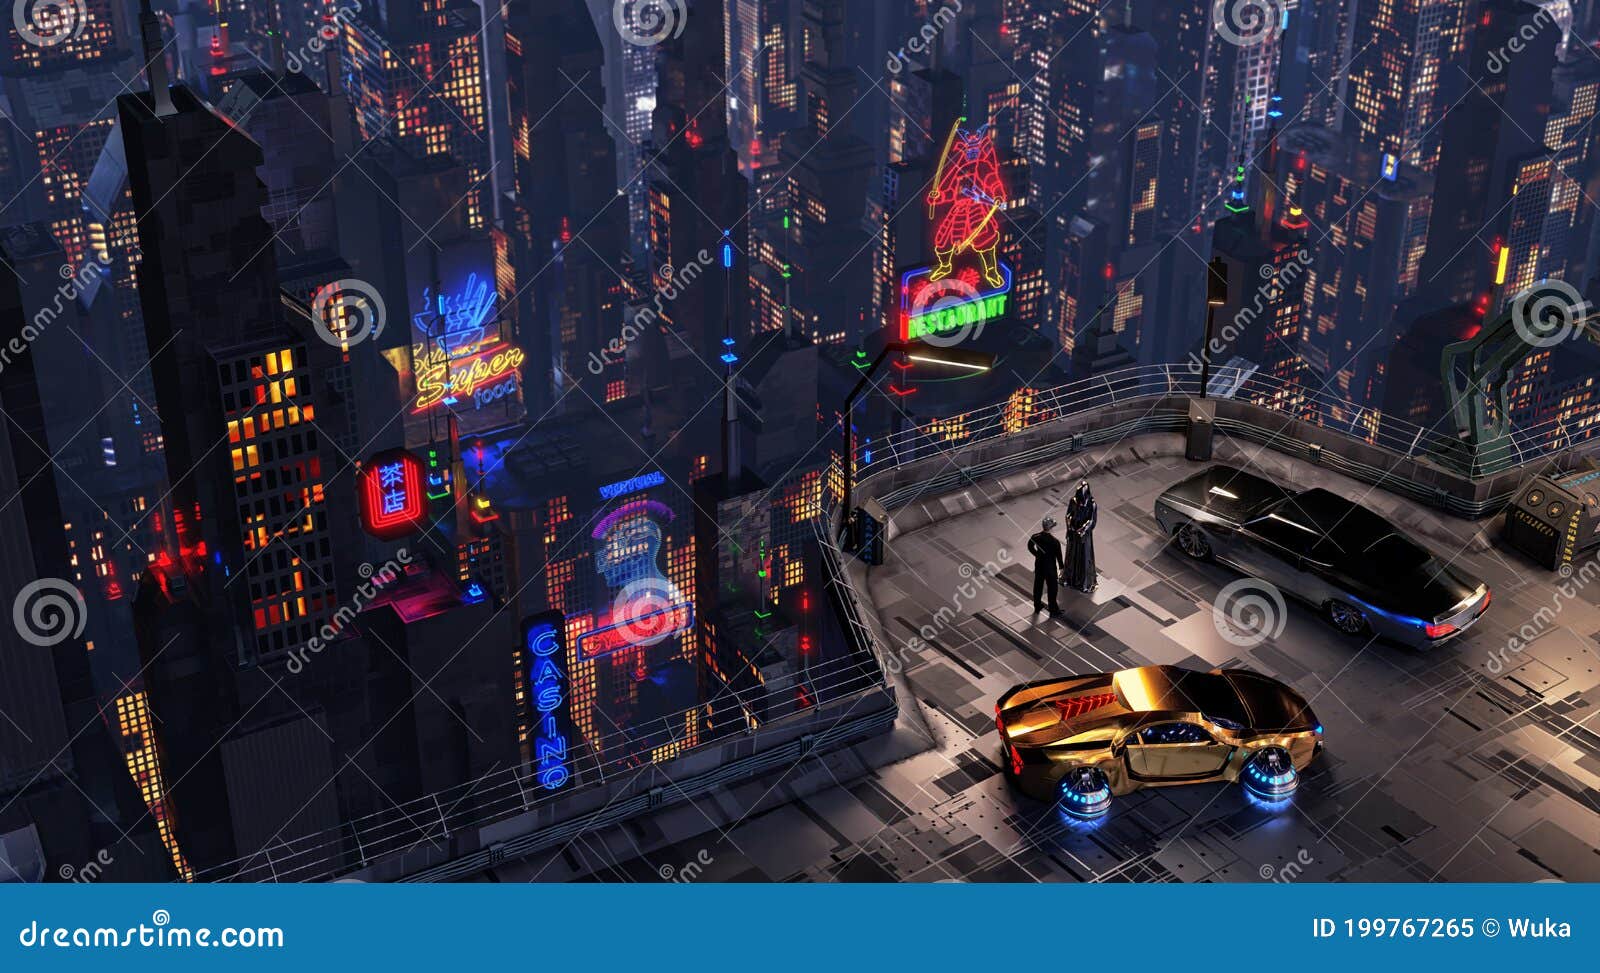 futuristic cyberpunk night city scene